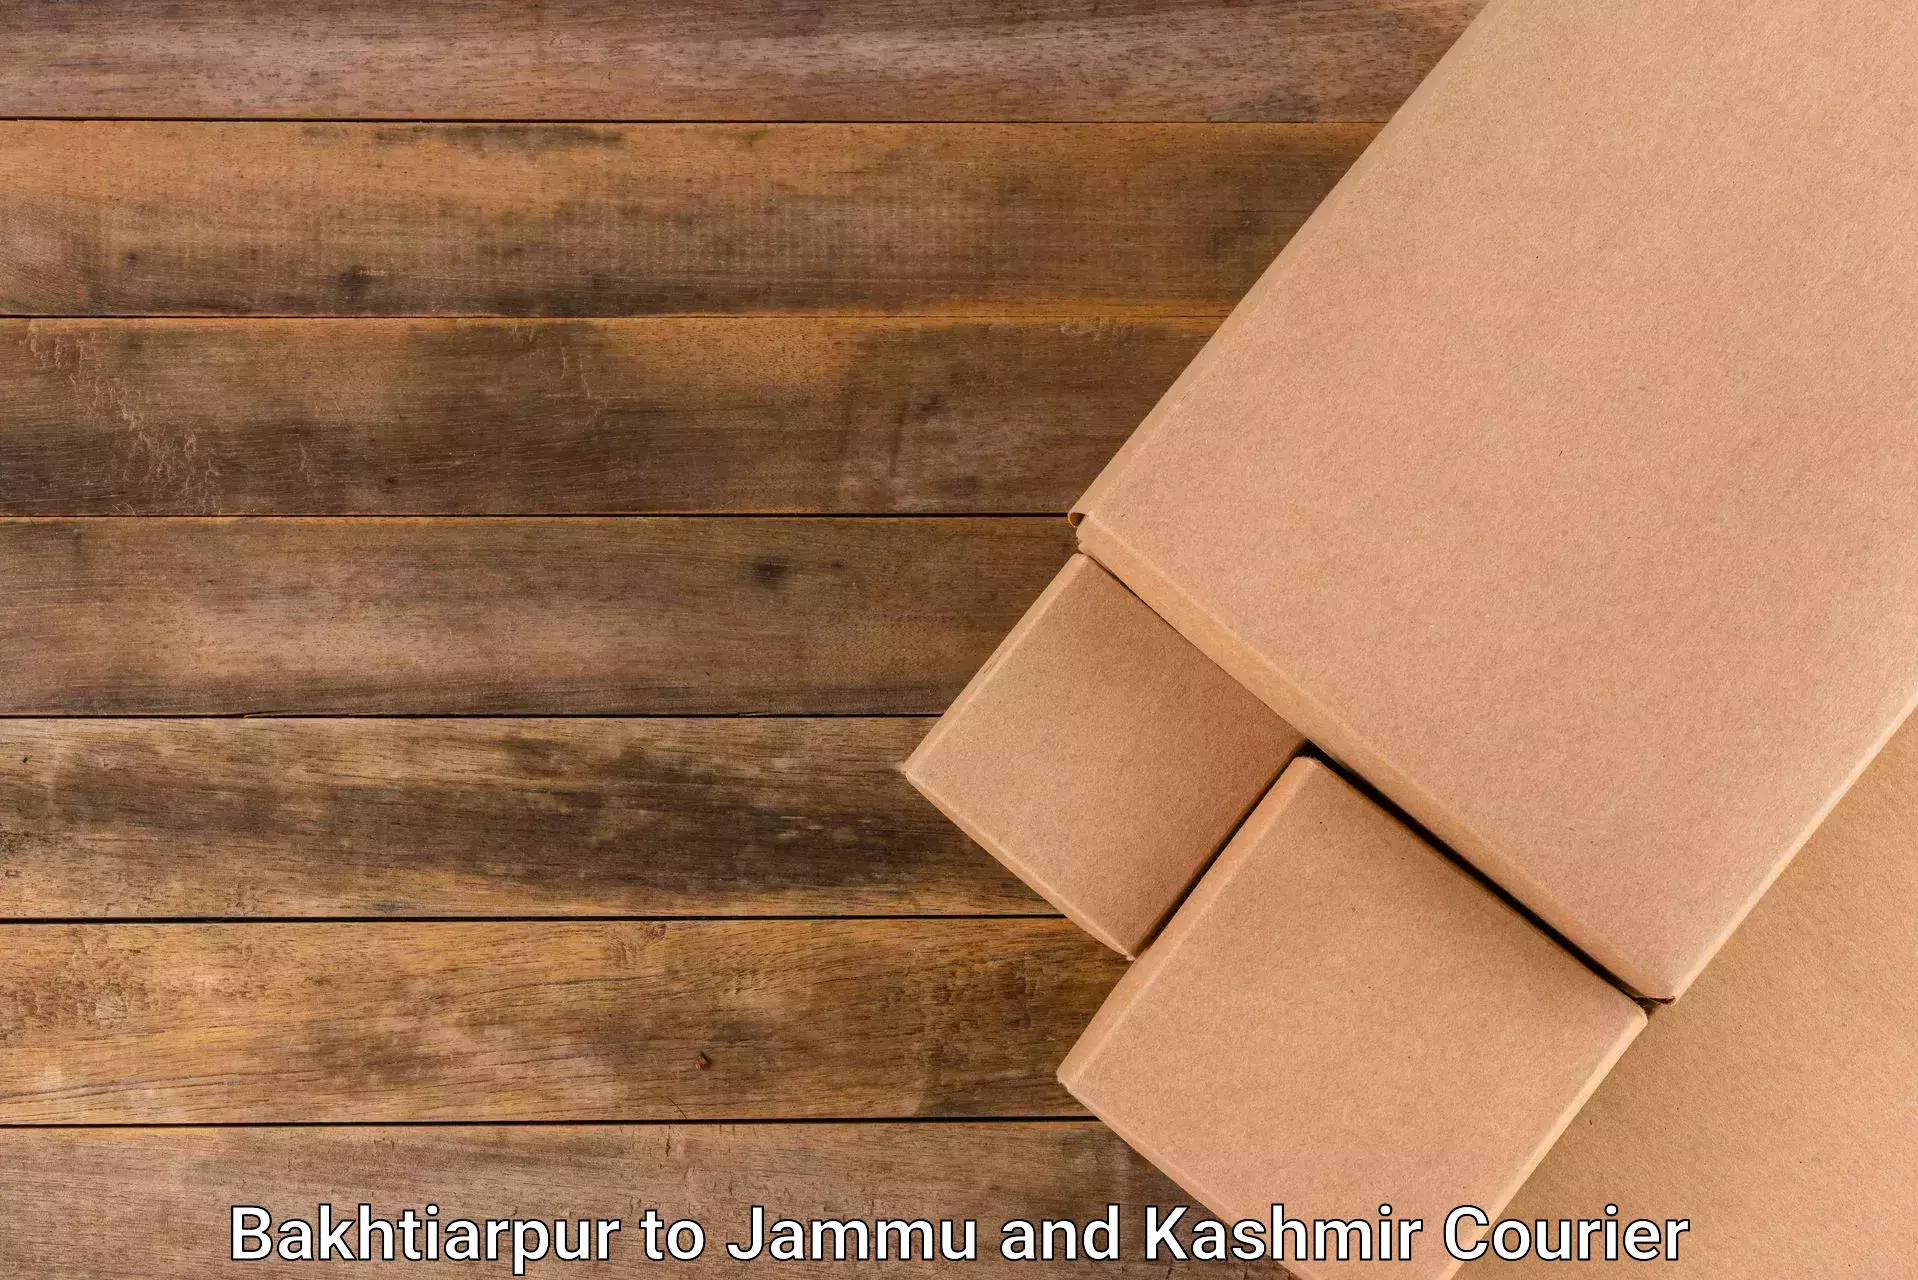 Professional courier handling Bakhtiarpur to Nagrota